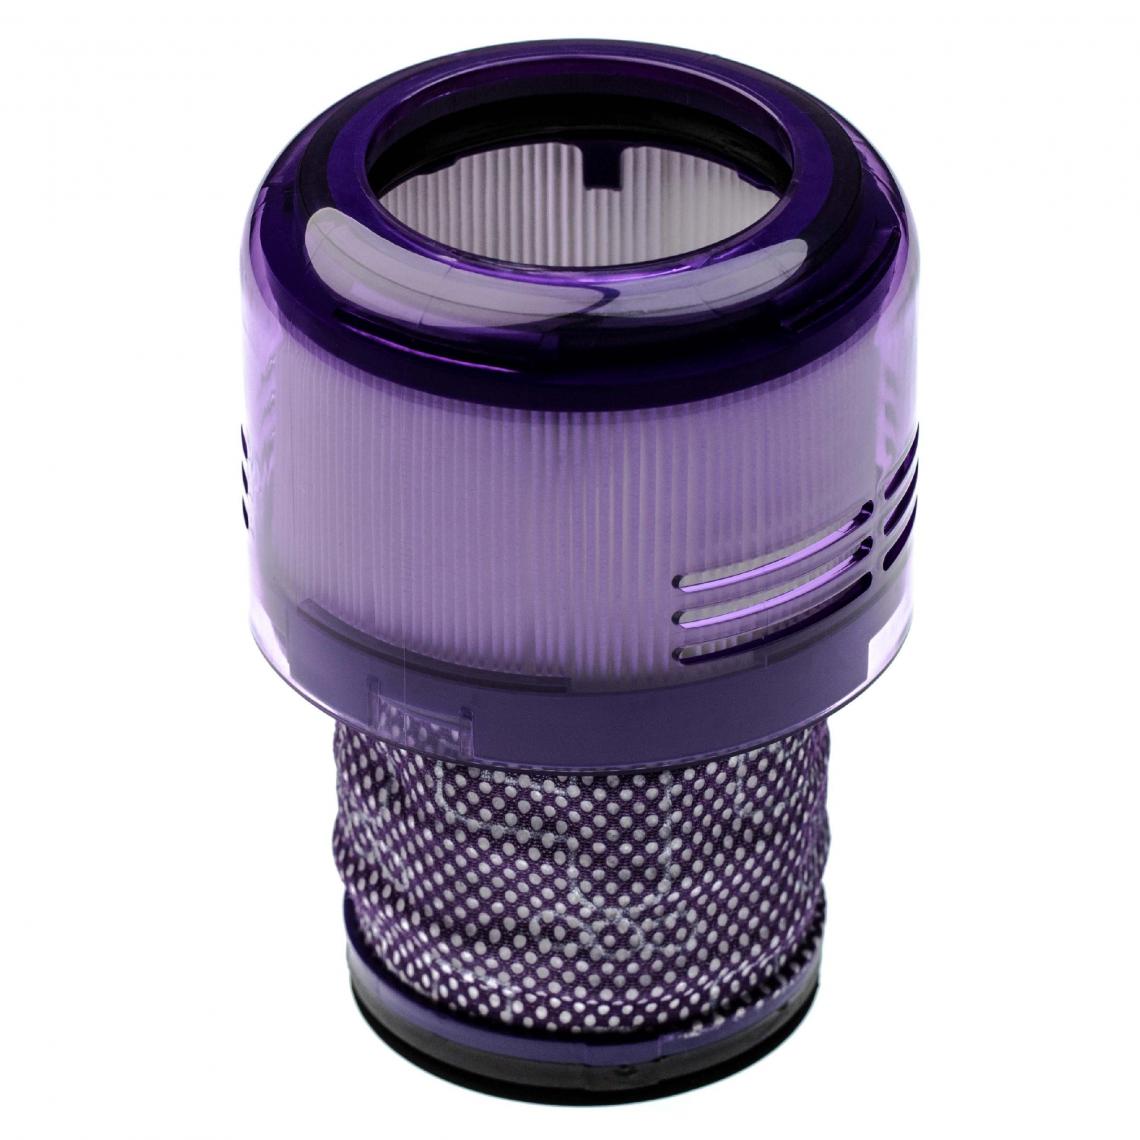 Vhbw - vhbw Filtre compatible avec Dyson V11 Outsize, V15 Detect Absolute aspirateur à main - filtre anti-saleté - Accessoire entretien des sols